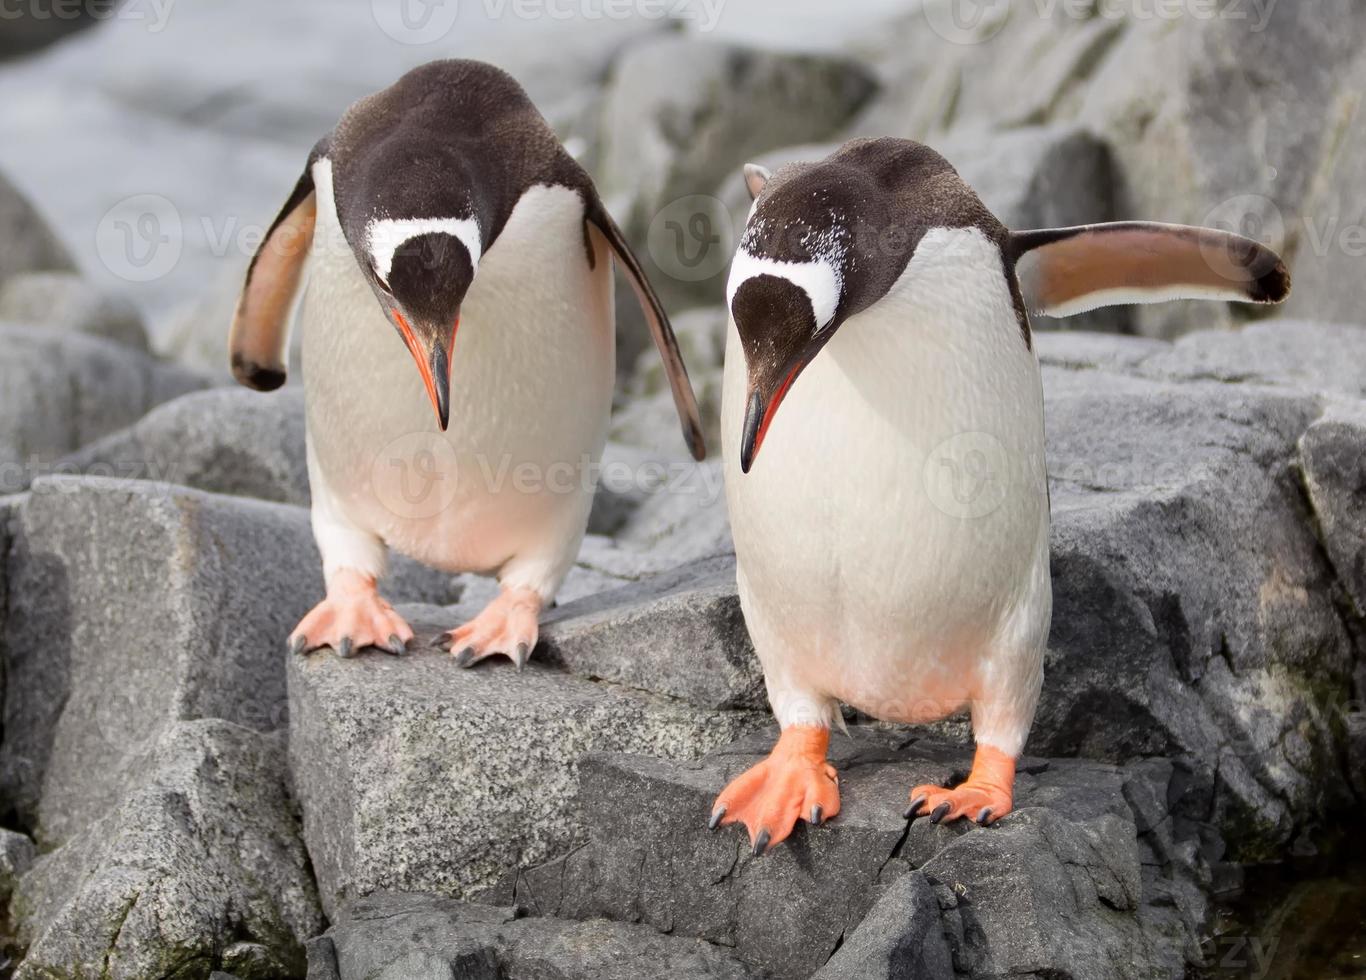 pinguins gentoo pulando foto